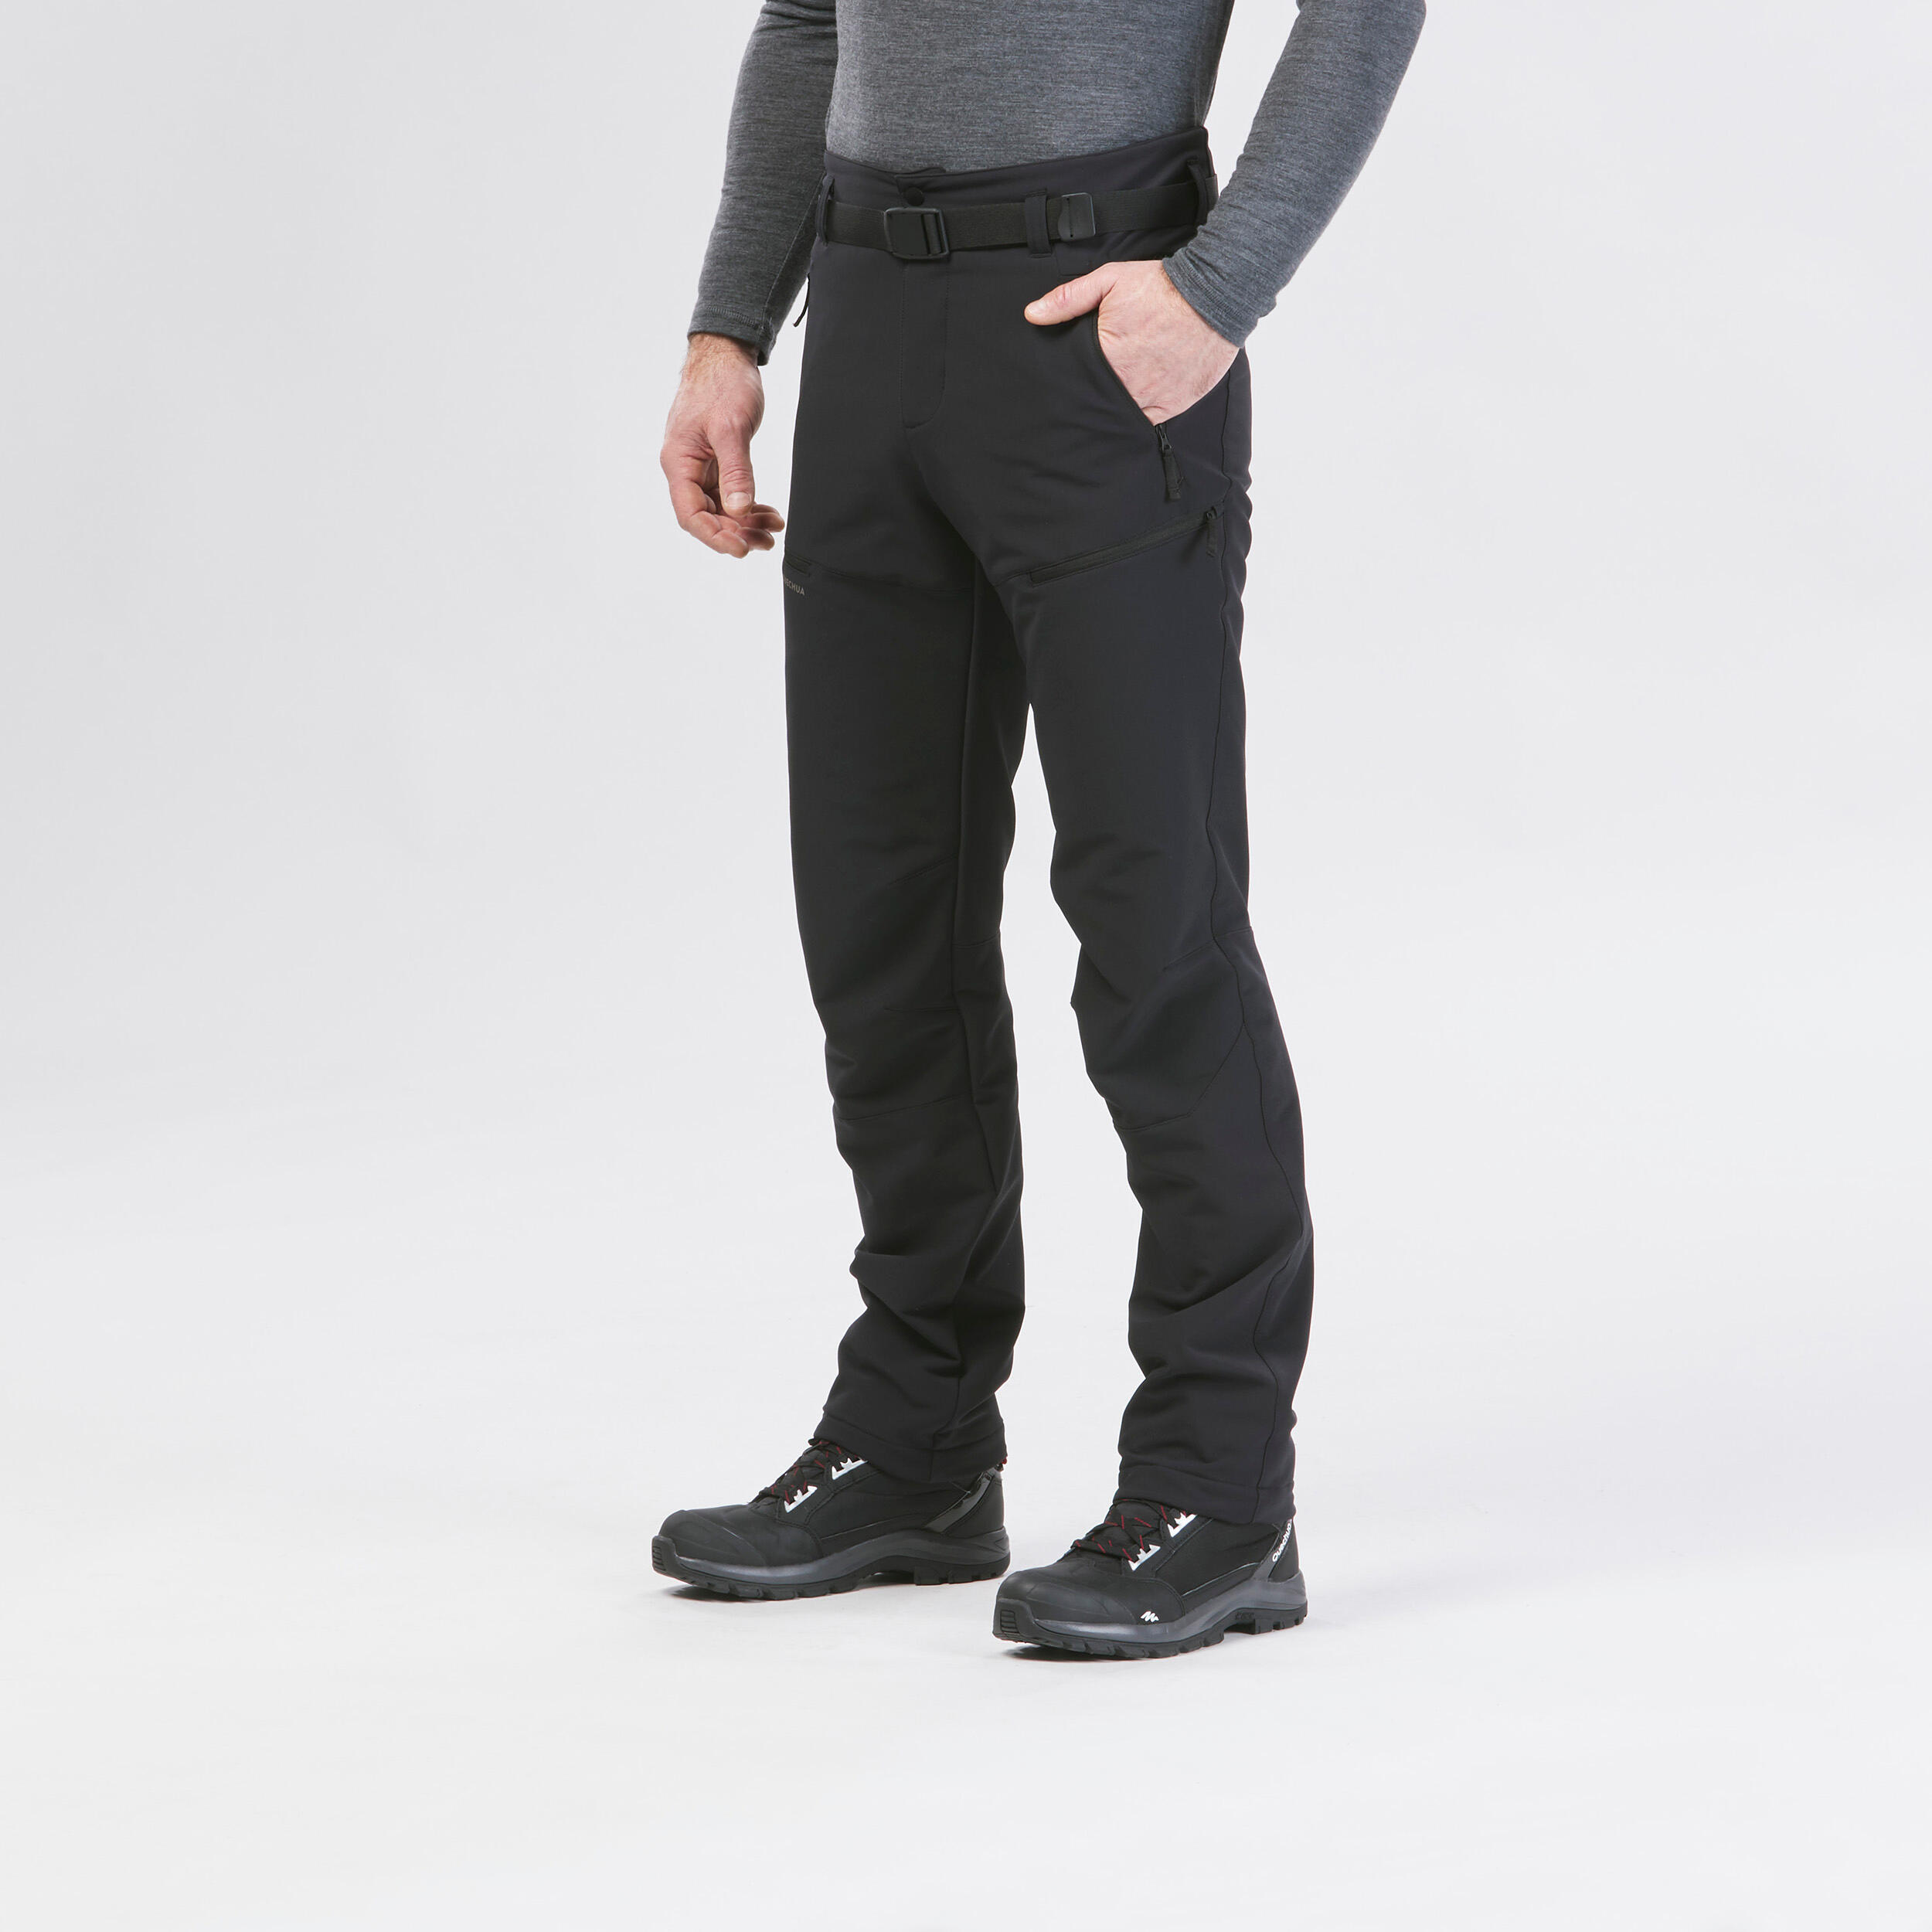 Pantalon chaud homme – SH 500 noir